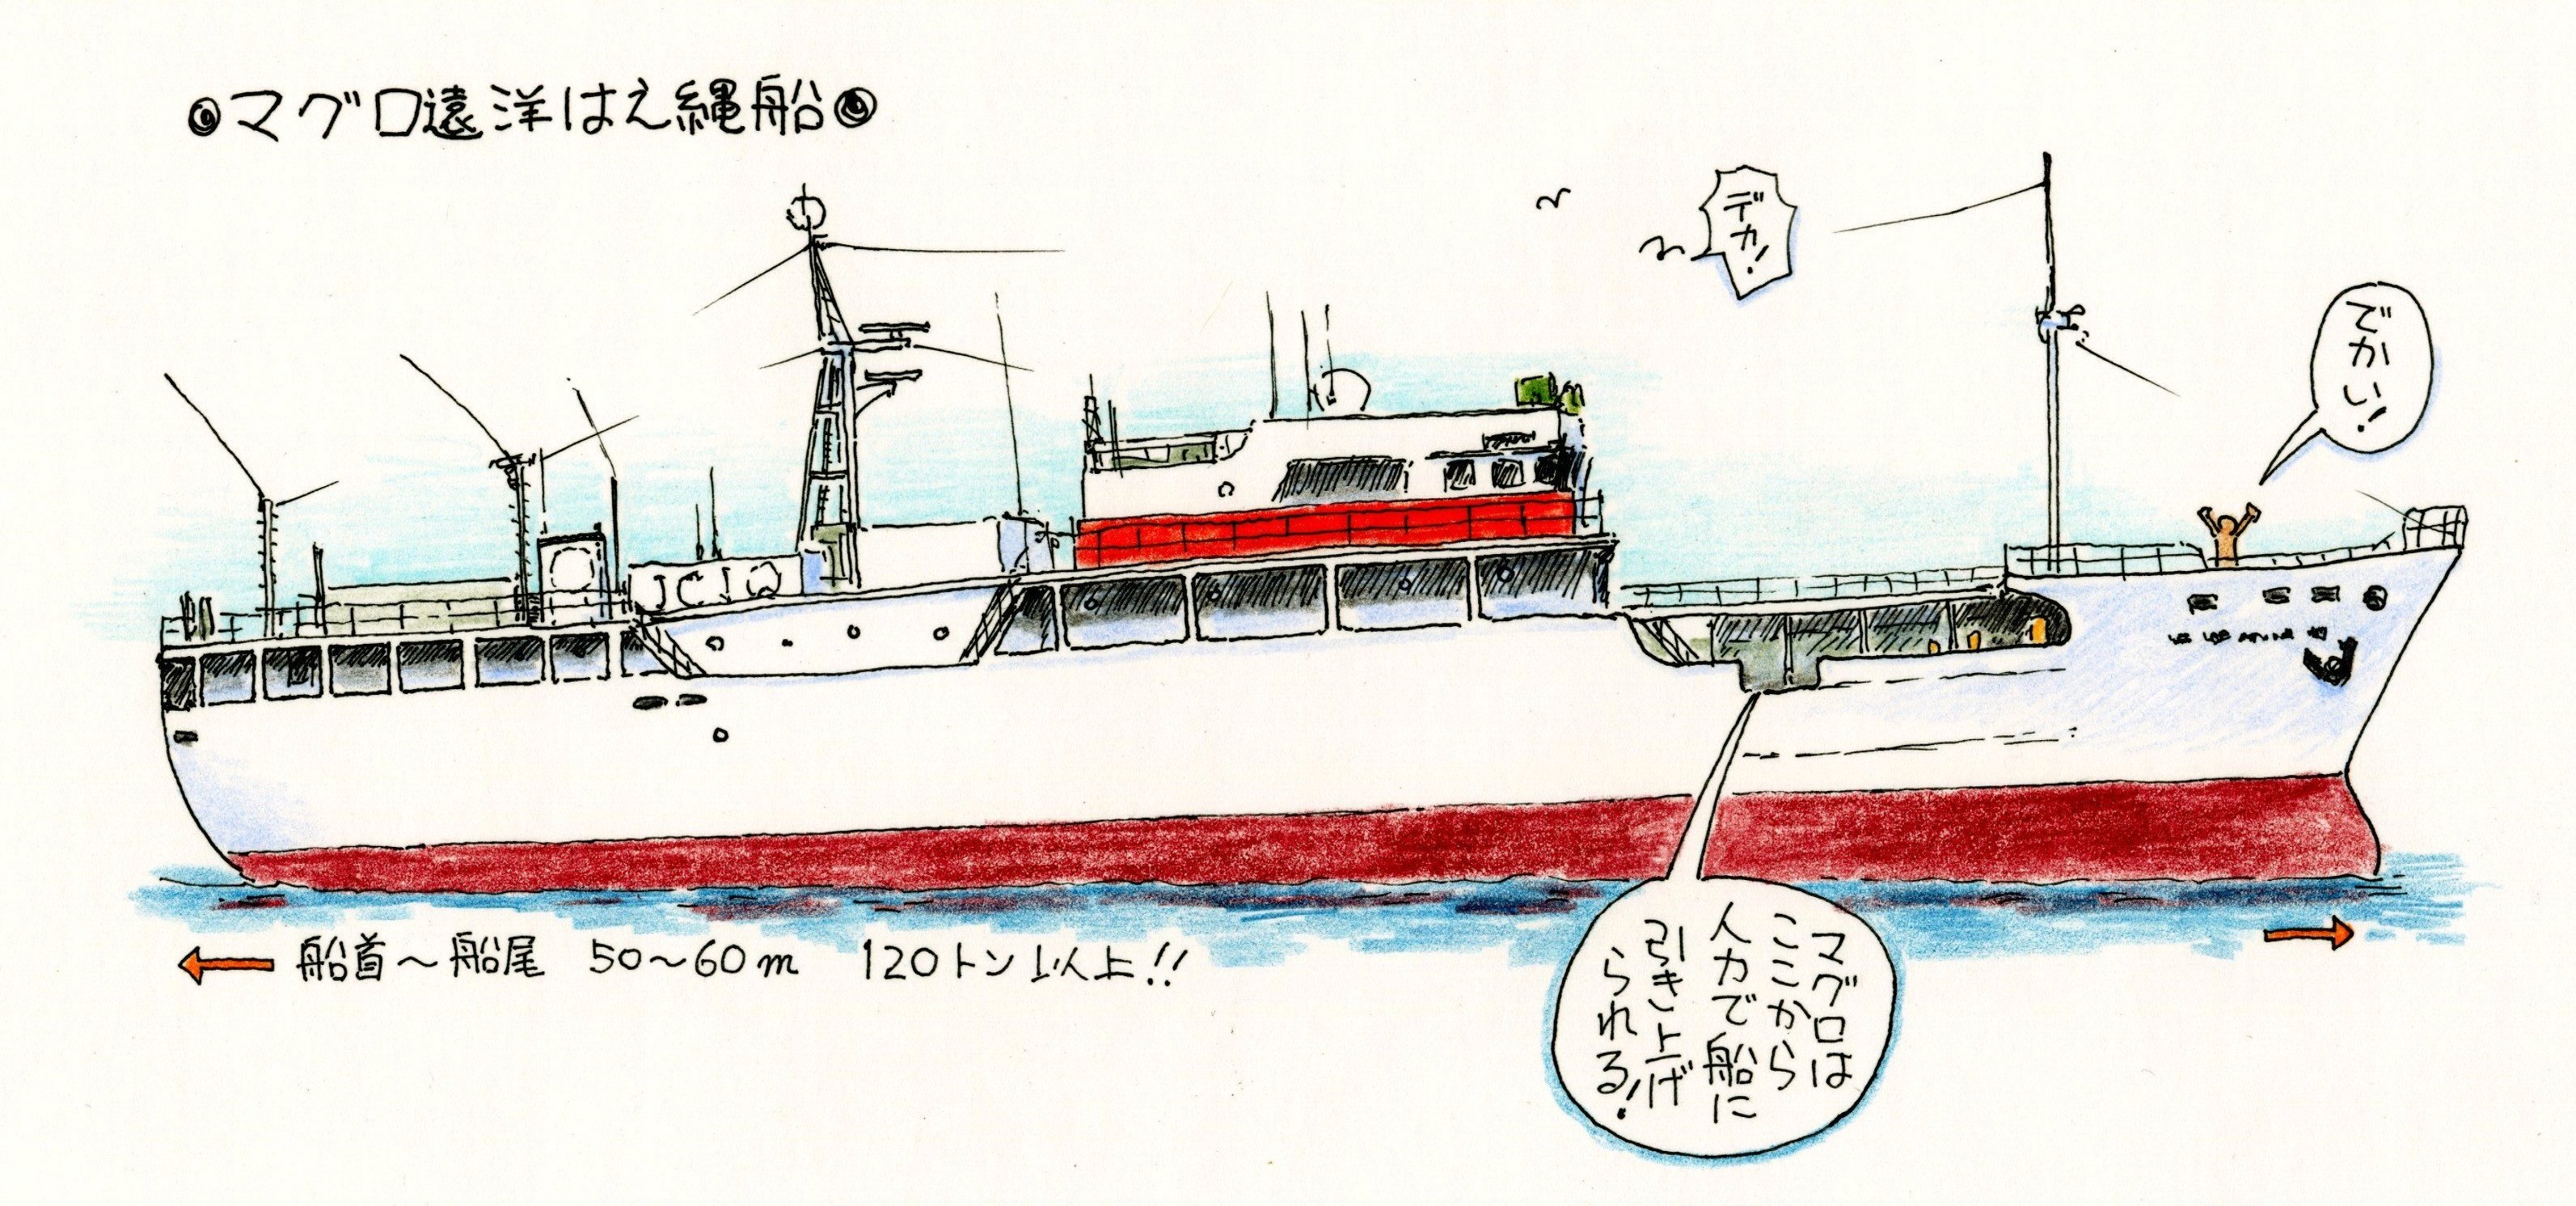 マグロ遠洋延縄船のイラスト